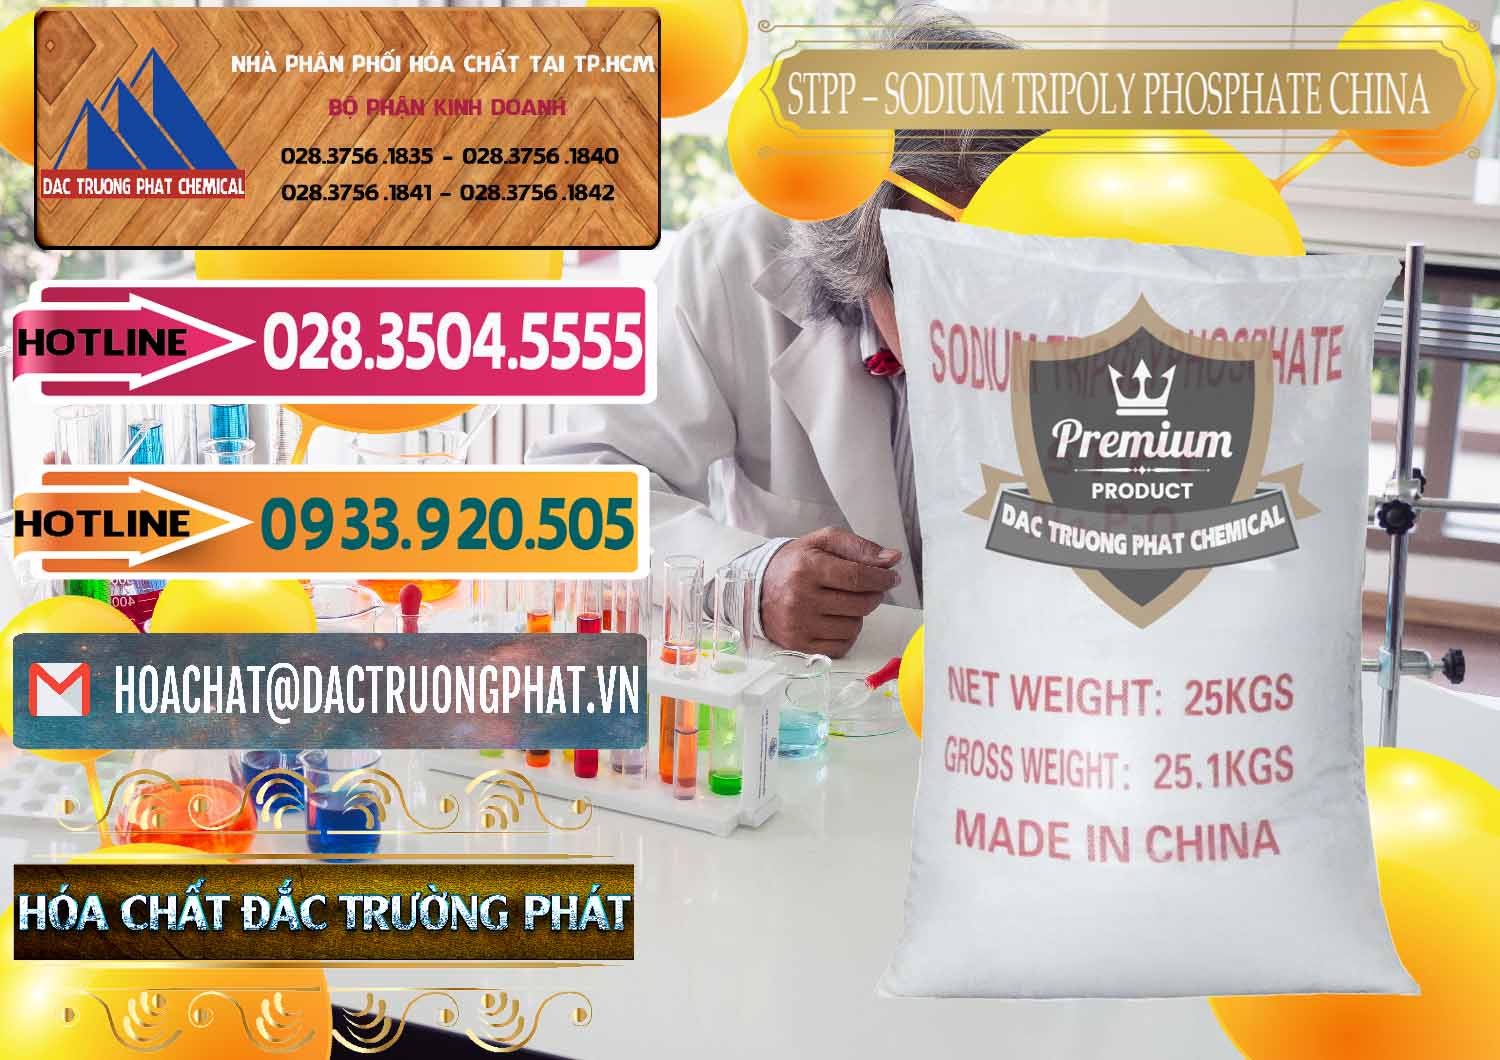 Nơi chuyên bán và phân phối Sodium Tripoly Phosphate - STPP 96% Chữ Đỏ Trung Quốc China - 0155 - Nơi chuyên kinh doanh và cung cấp hóa chất tại TP.HCM - dactruongphat.vn